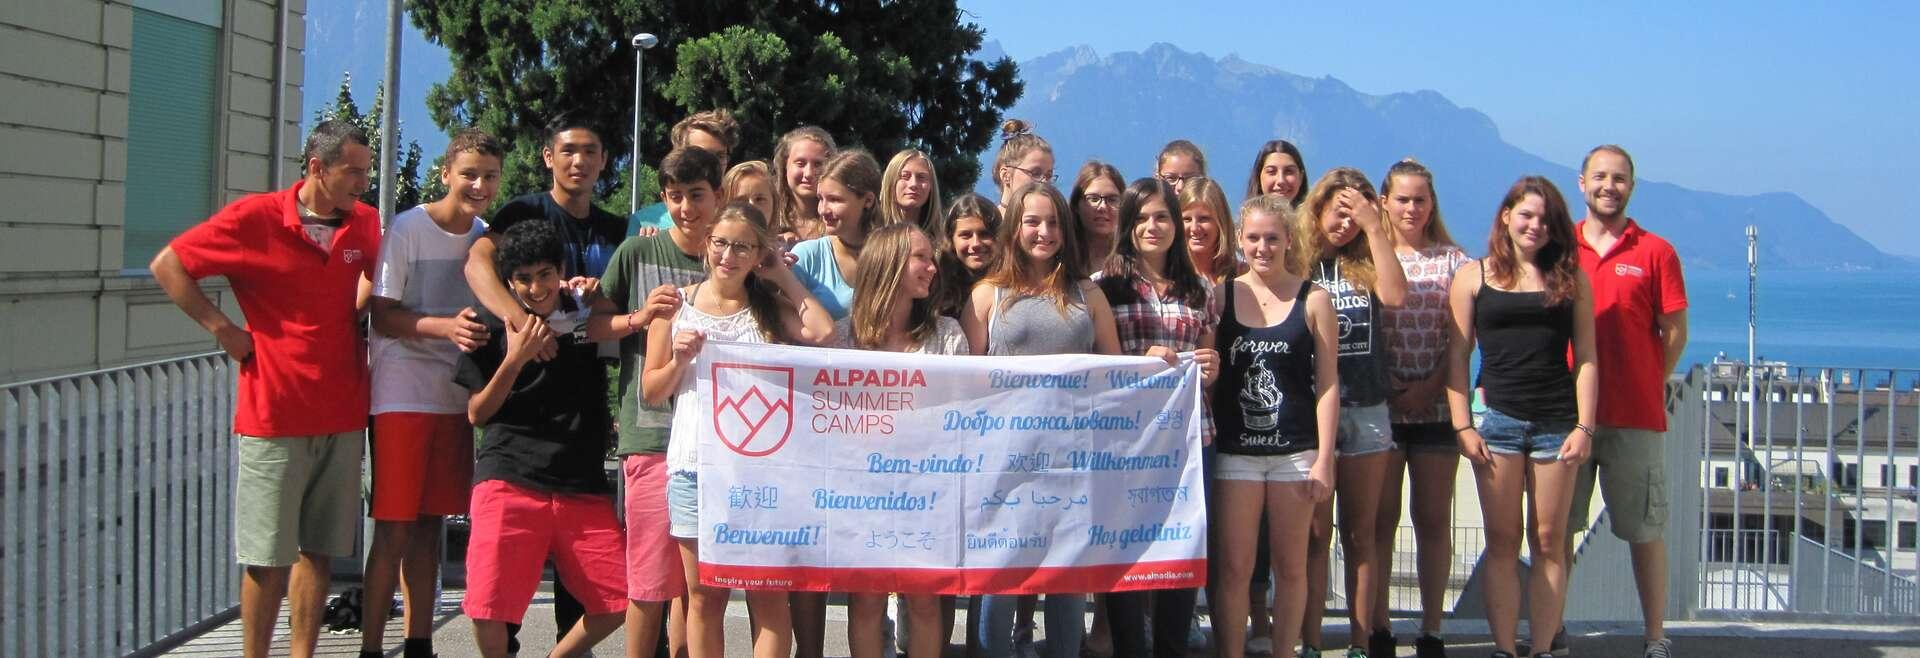 Sprachaufenthalt Schweiz, Montreux, Alpadia Language School Montreux Riviera, Studenten